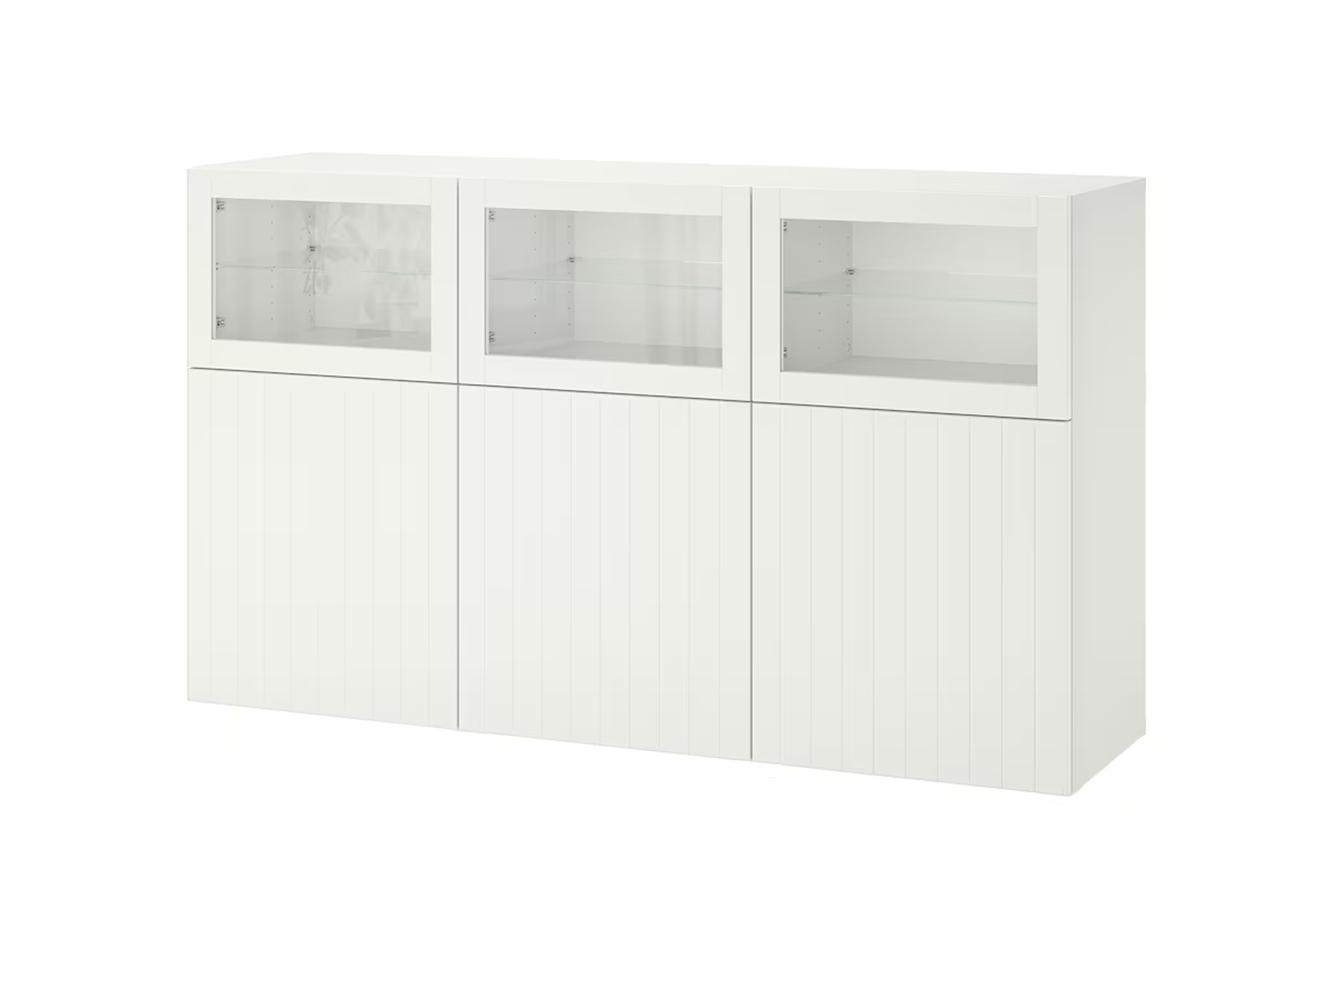 Буфет Беста 319 white ИКЕА (IKEA) изображение товара